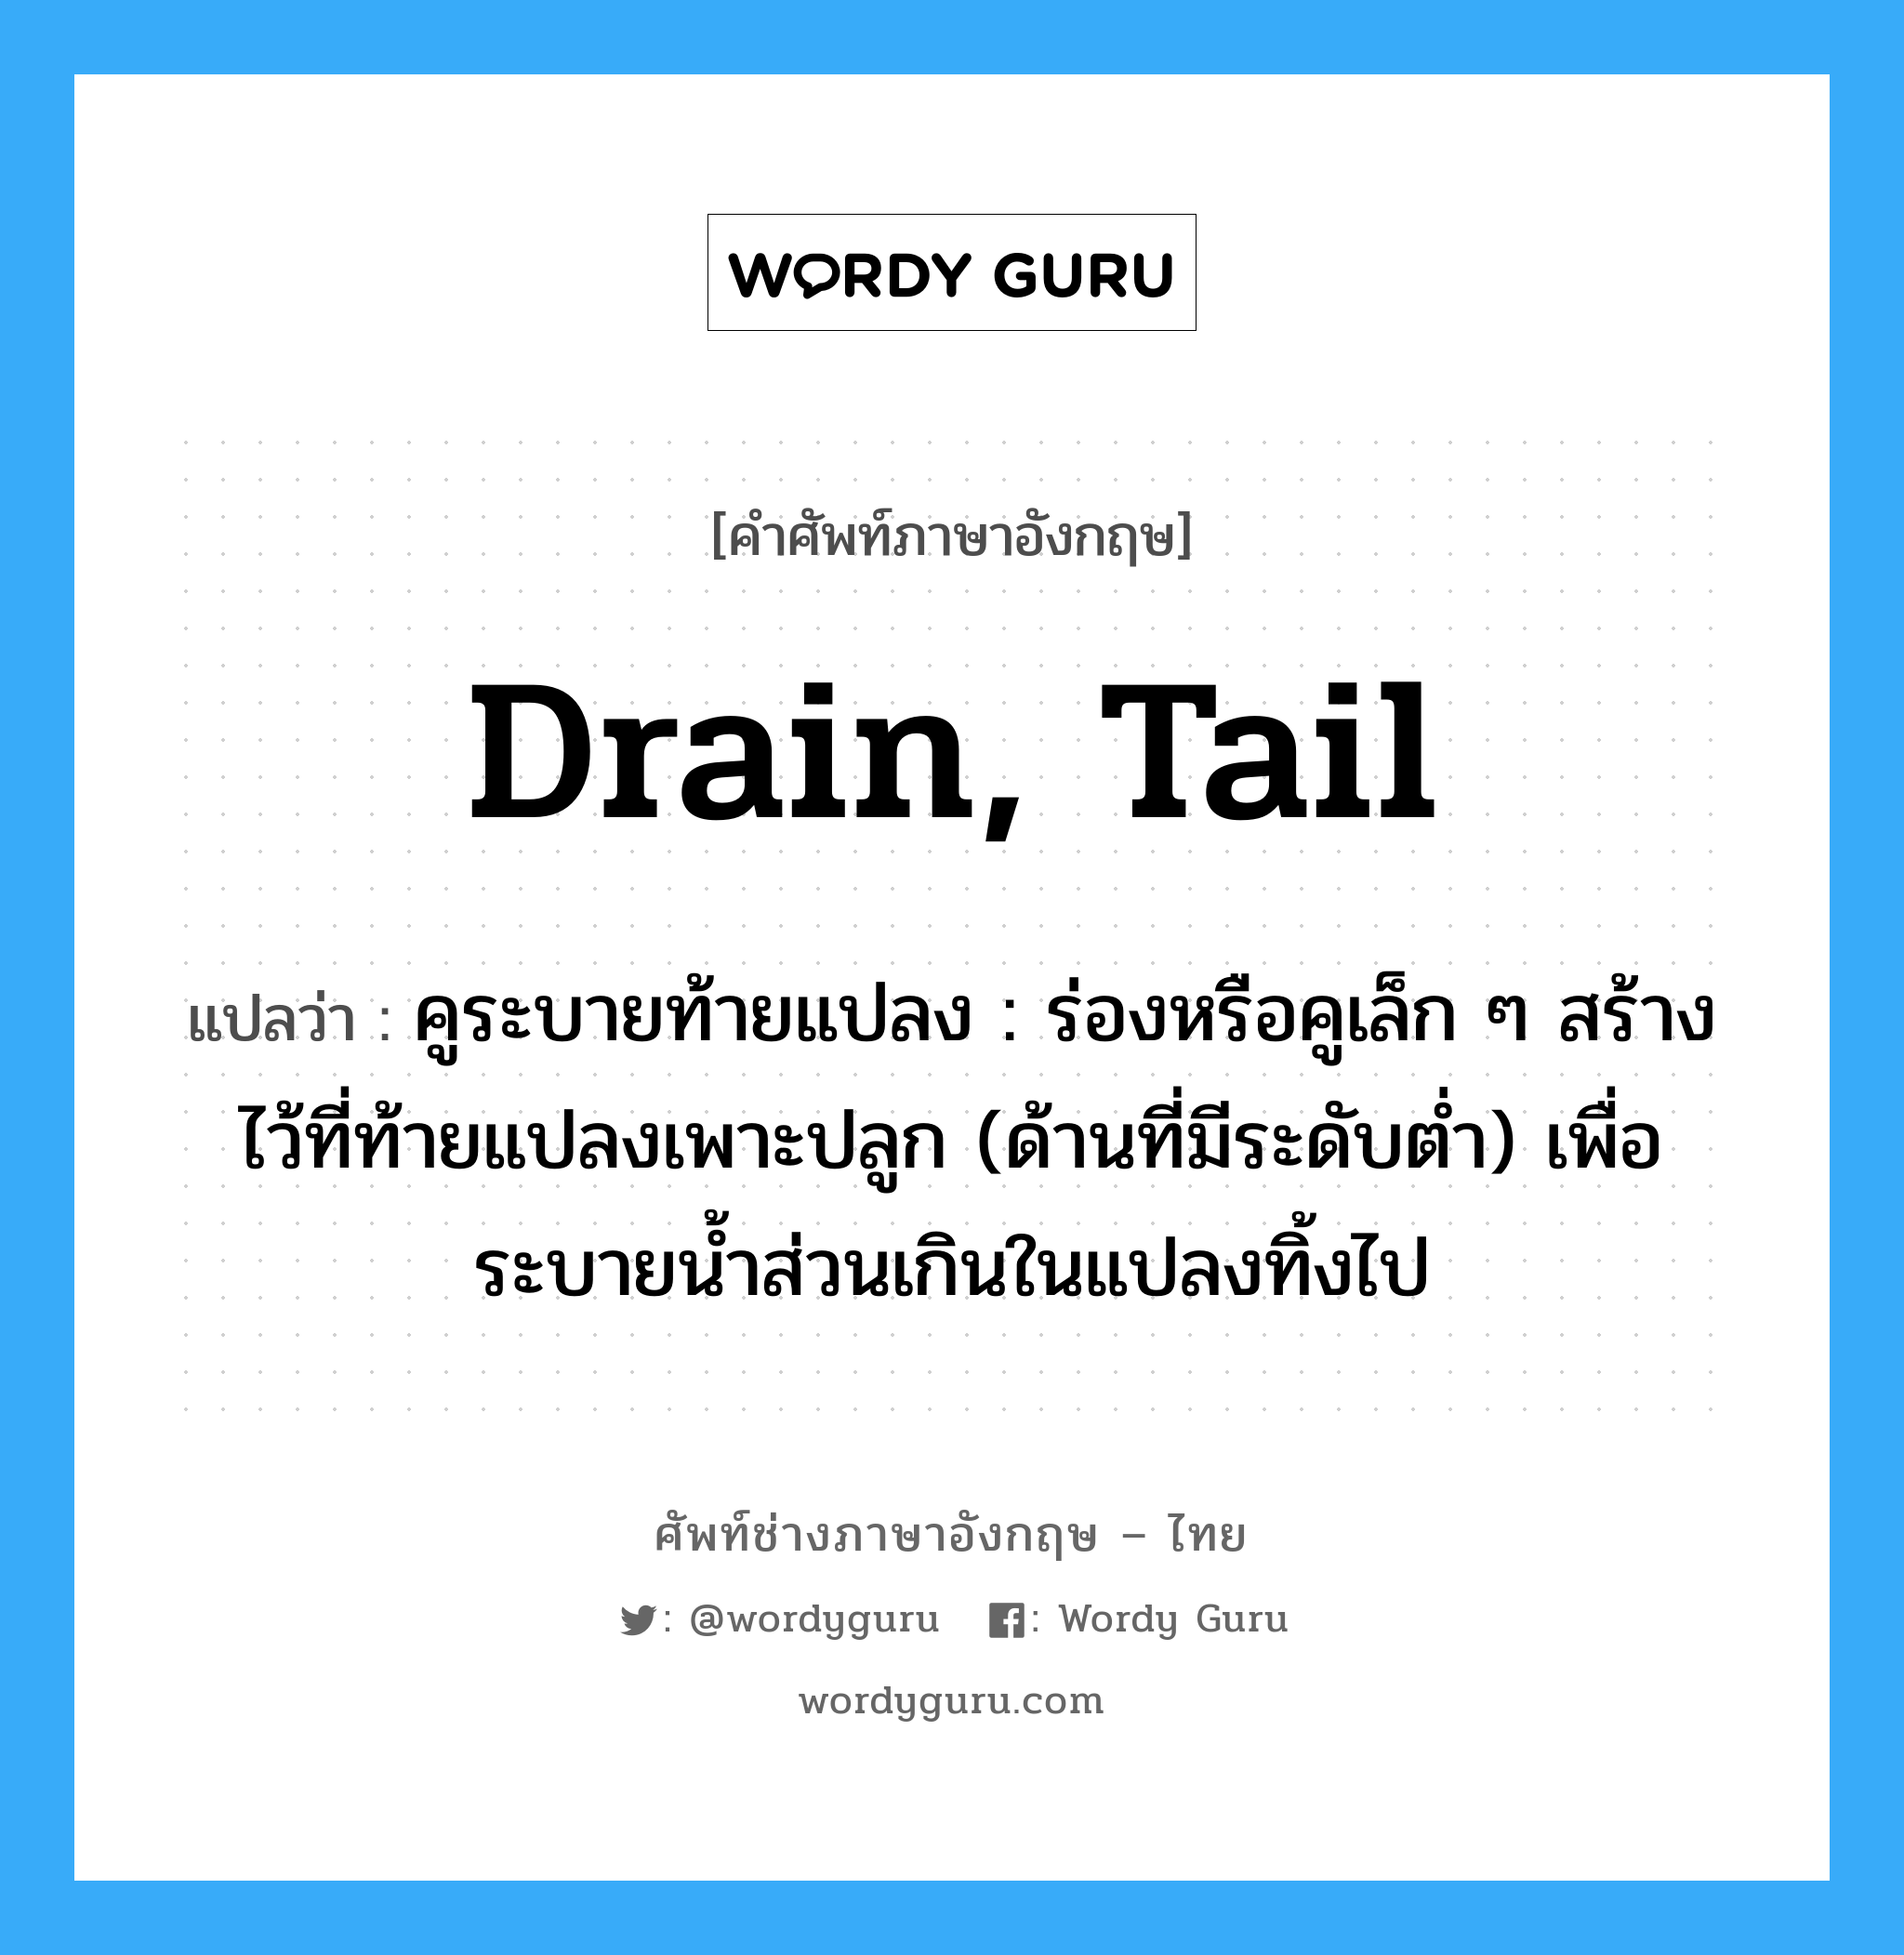 drain, tail แปลว่า?, คำศัพท์ช่างภาษาอังกฤษ - ไทย drain, tail คำศัพท์ภาษาอังกฤษ drain, tail แปลว่า คูระบายท้ายแปลง : ร่องหรือคูเล็ก ๆ สร้างไว้ที่ท้ายแปลงเพาะปลูก (ด้านที่มีระดับต่ำ) เพื่อระบายน้ำส่วนเกินในแปลงทิ้งไป